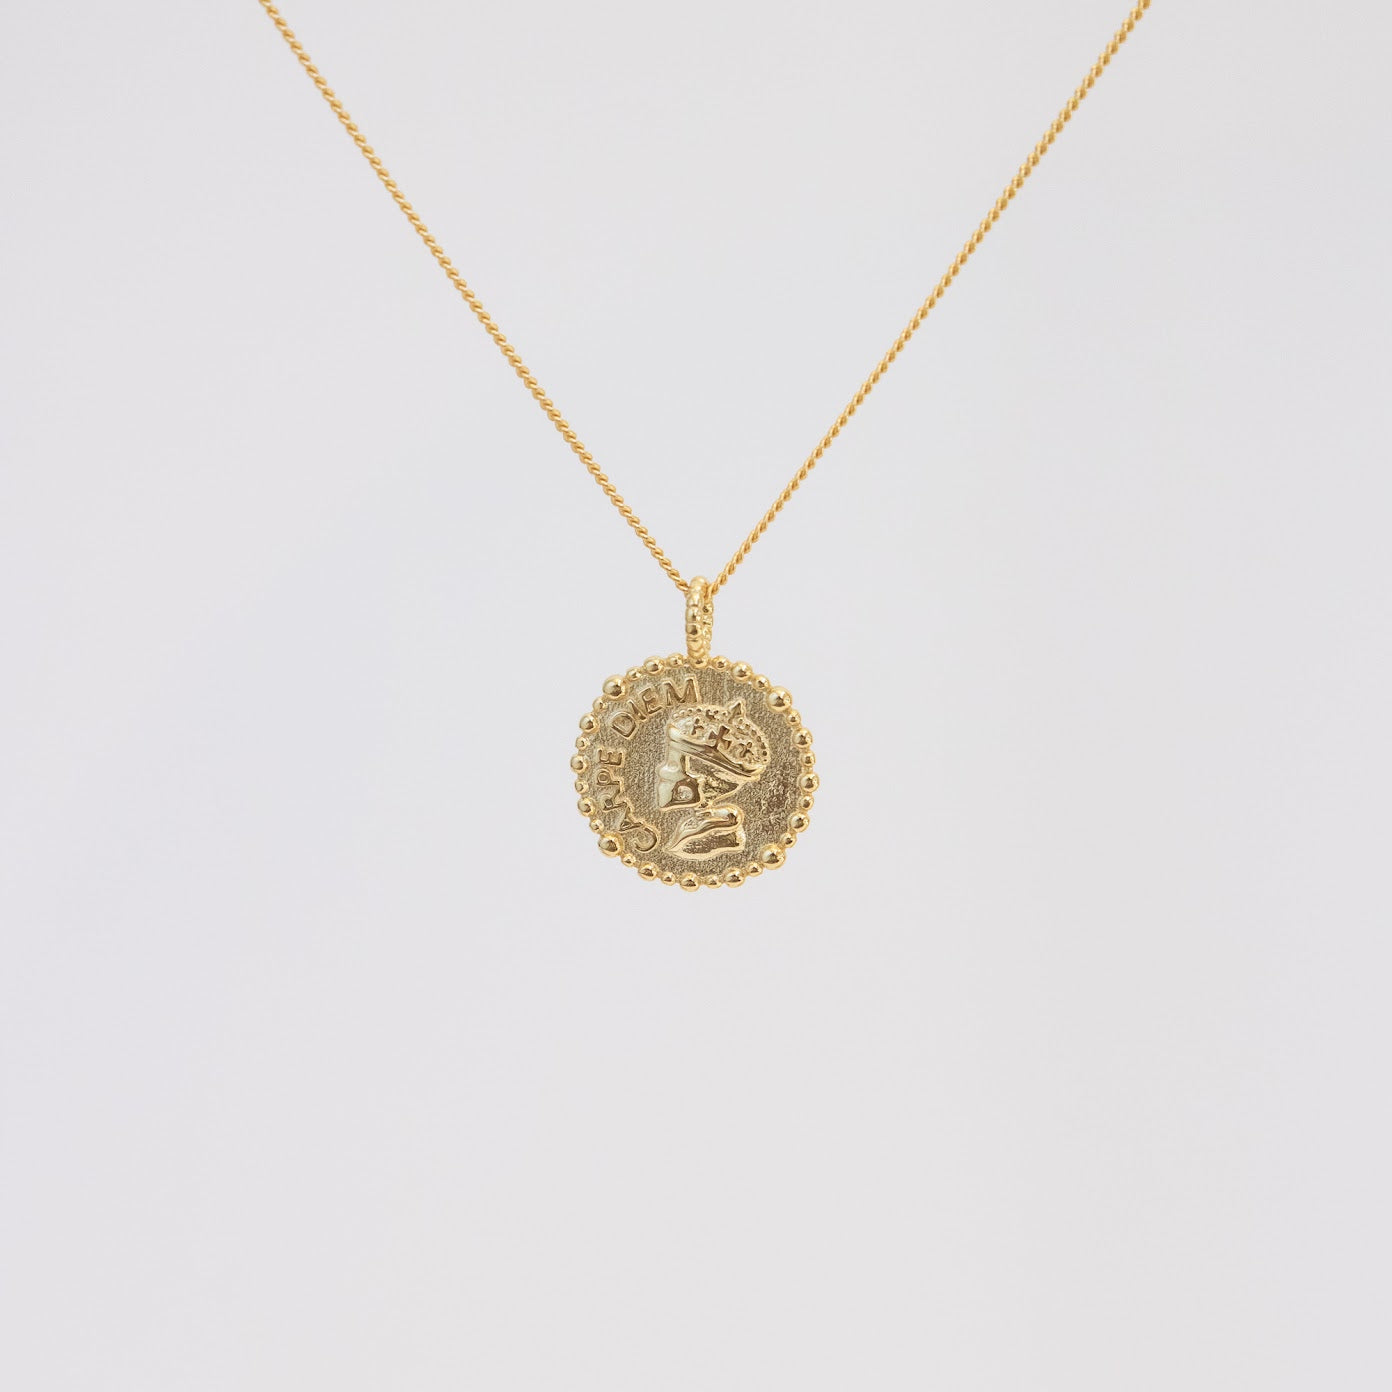 Roman Coin Necklace